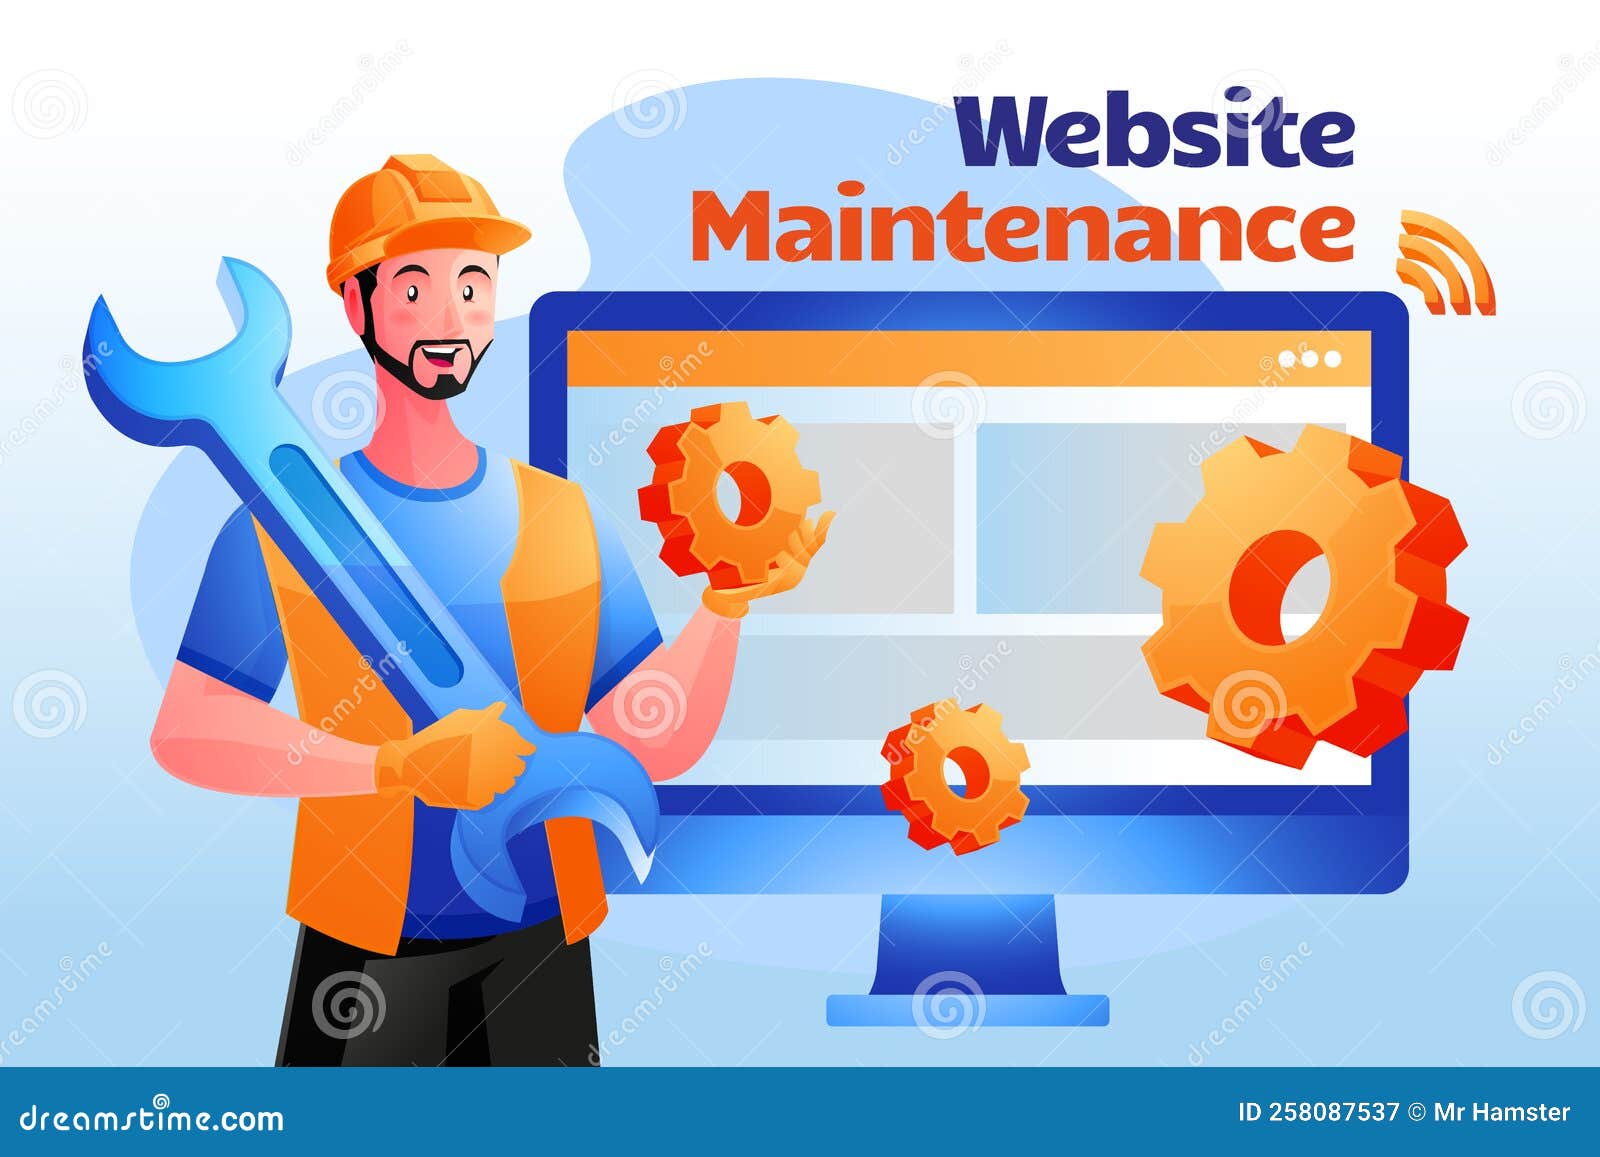 Website Maintenance. Maintenance update